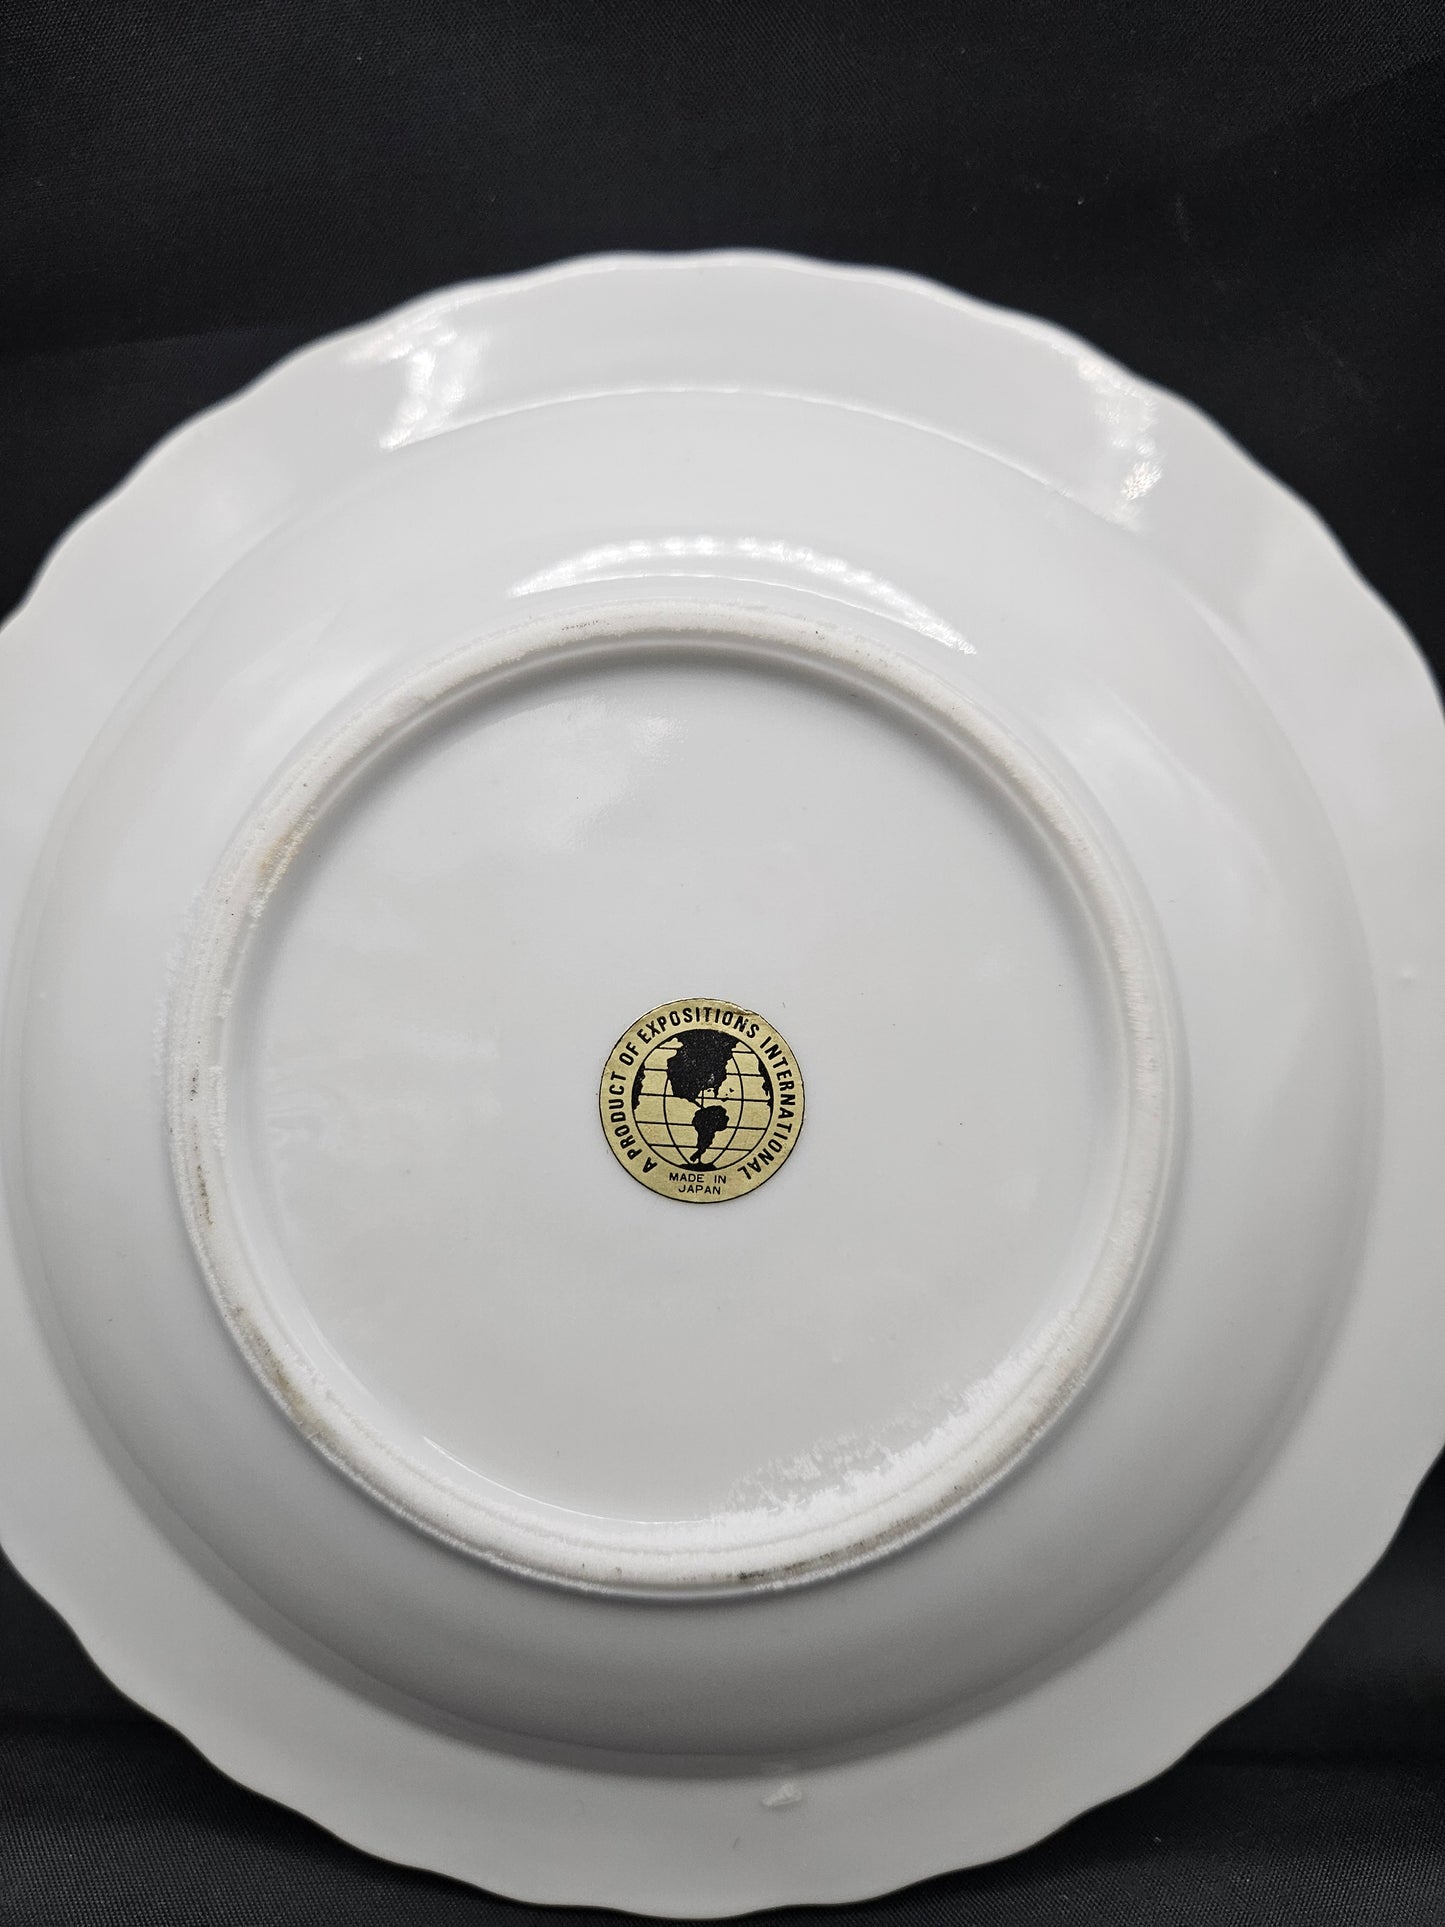 EXPO '74 original souvenir ashtray